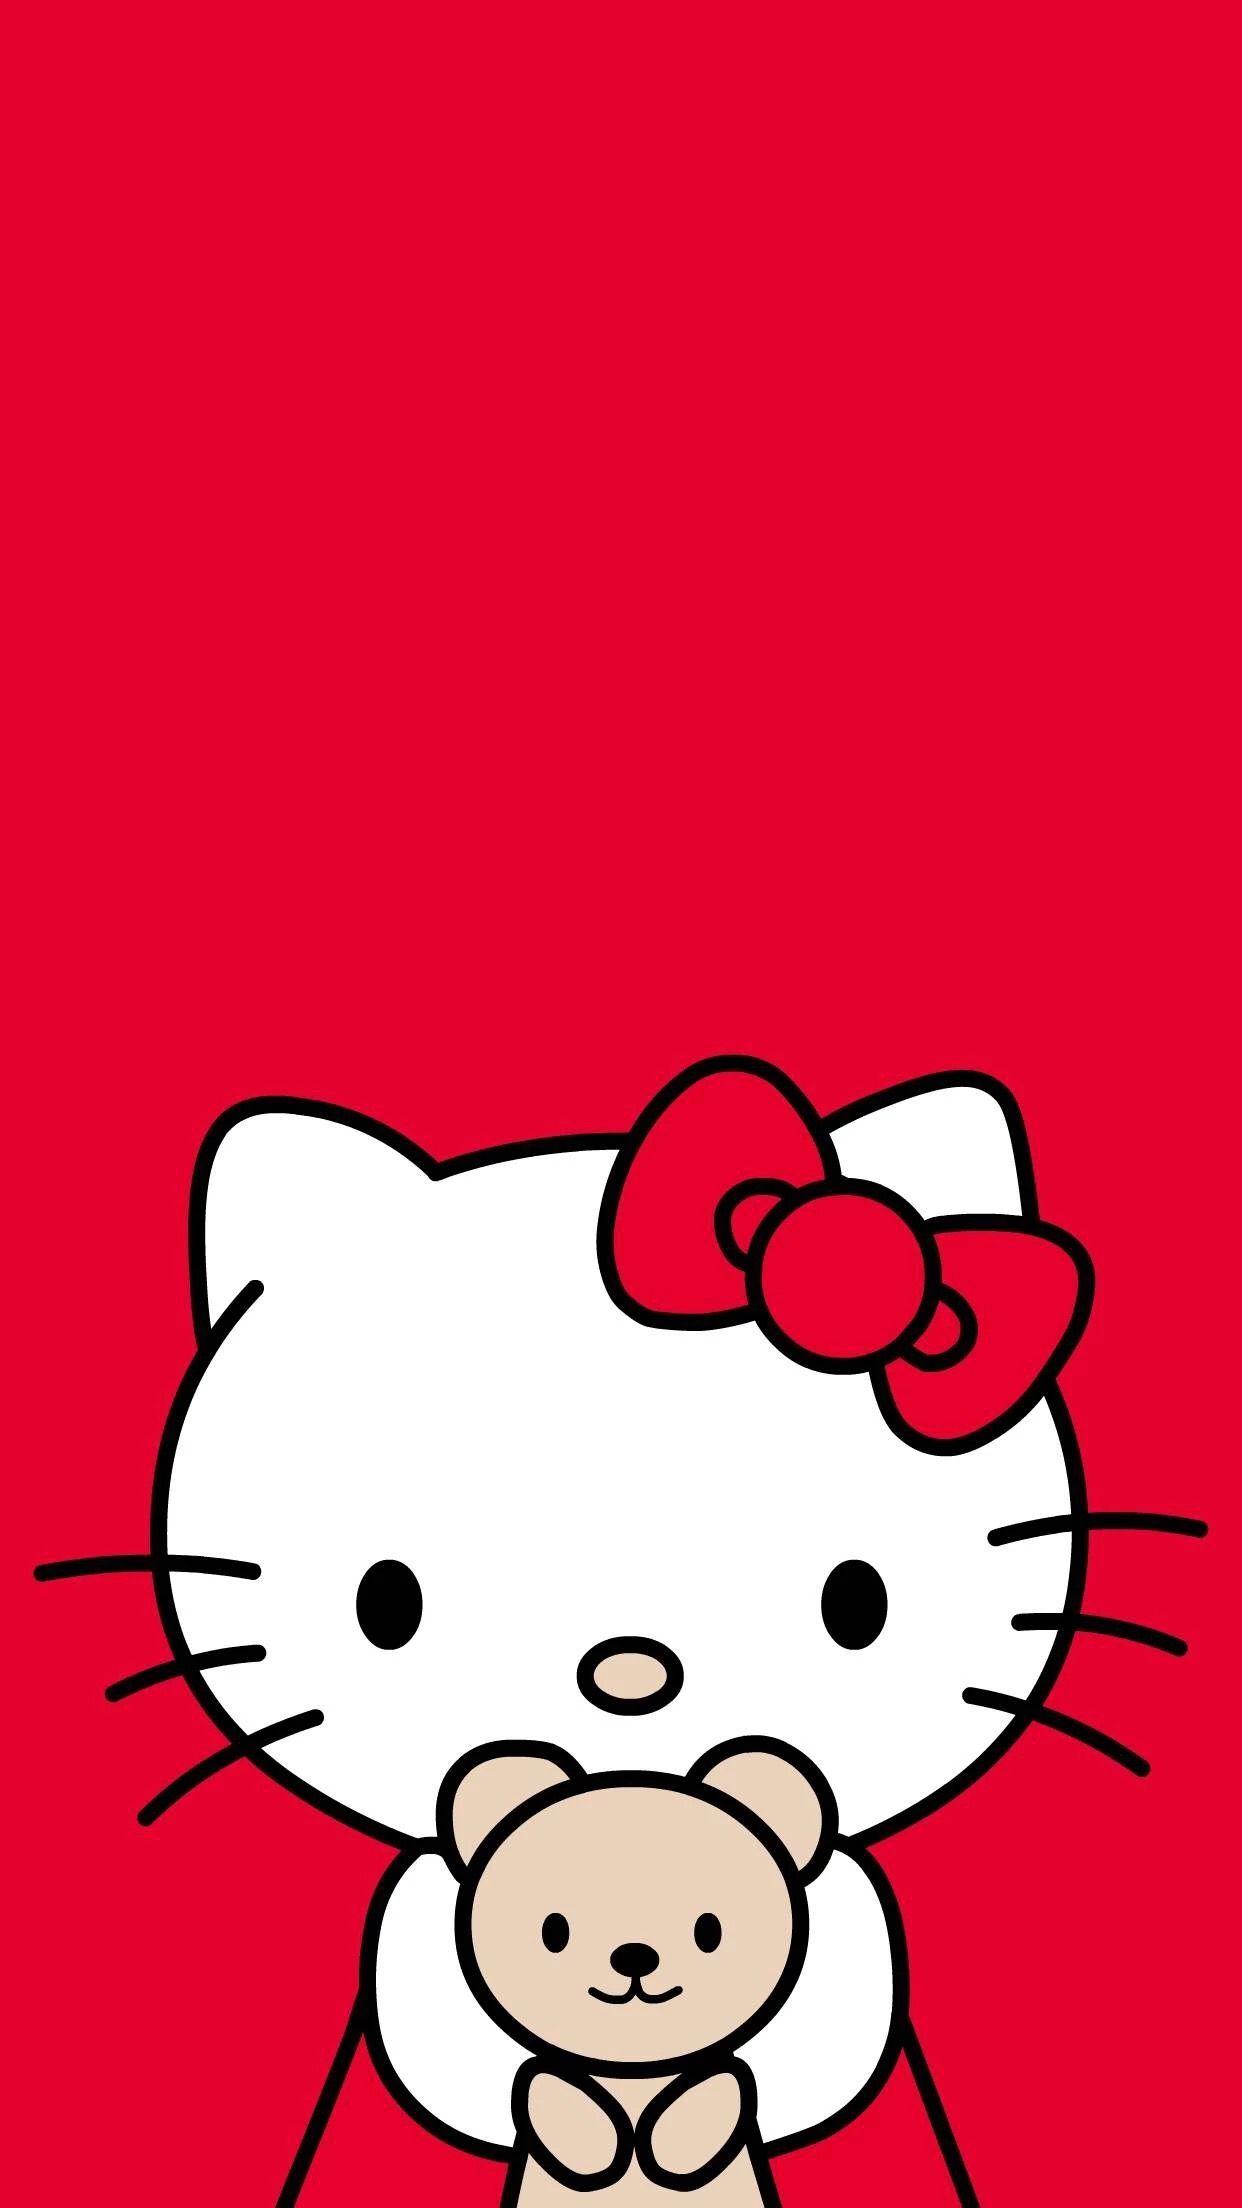 Hello Kitty với nền đỏ vô cùng cuốn hút, thử tưởng tượng nó hiện ra trên máy tính của bạn và đẩm chất mới lạ nó mang lại. Hãy trang trí cho màn hình của bạn một hình nền Hello Kitty đáng yêu và tạo nên không gian làm việc vui tươi.